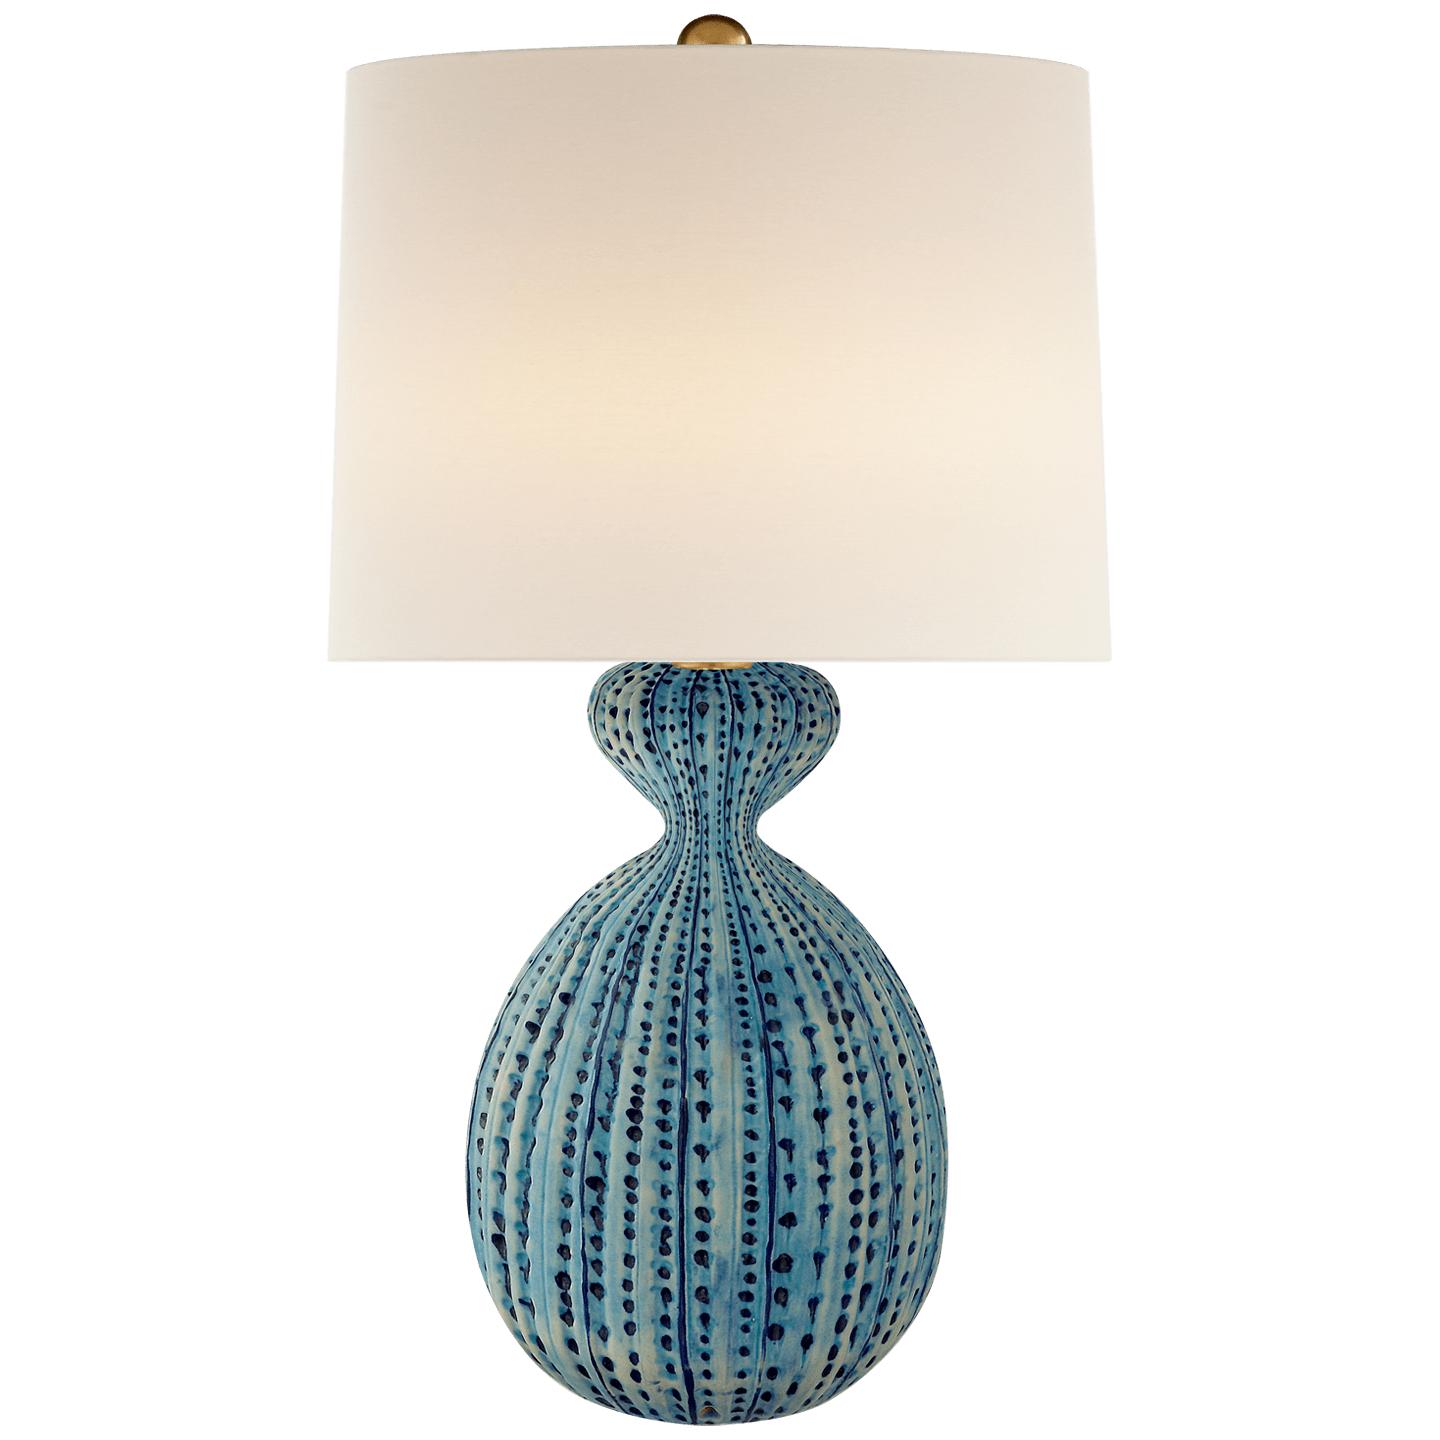 Купить Настольная лампа Gannet Table Lamp в интернет-магазине roooms.ru